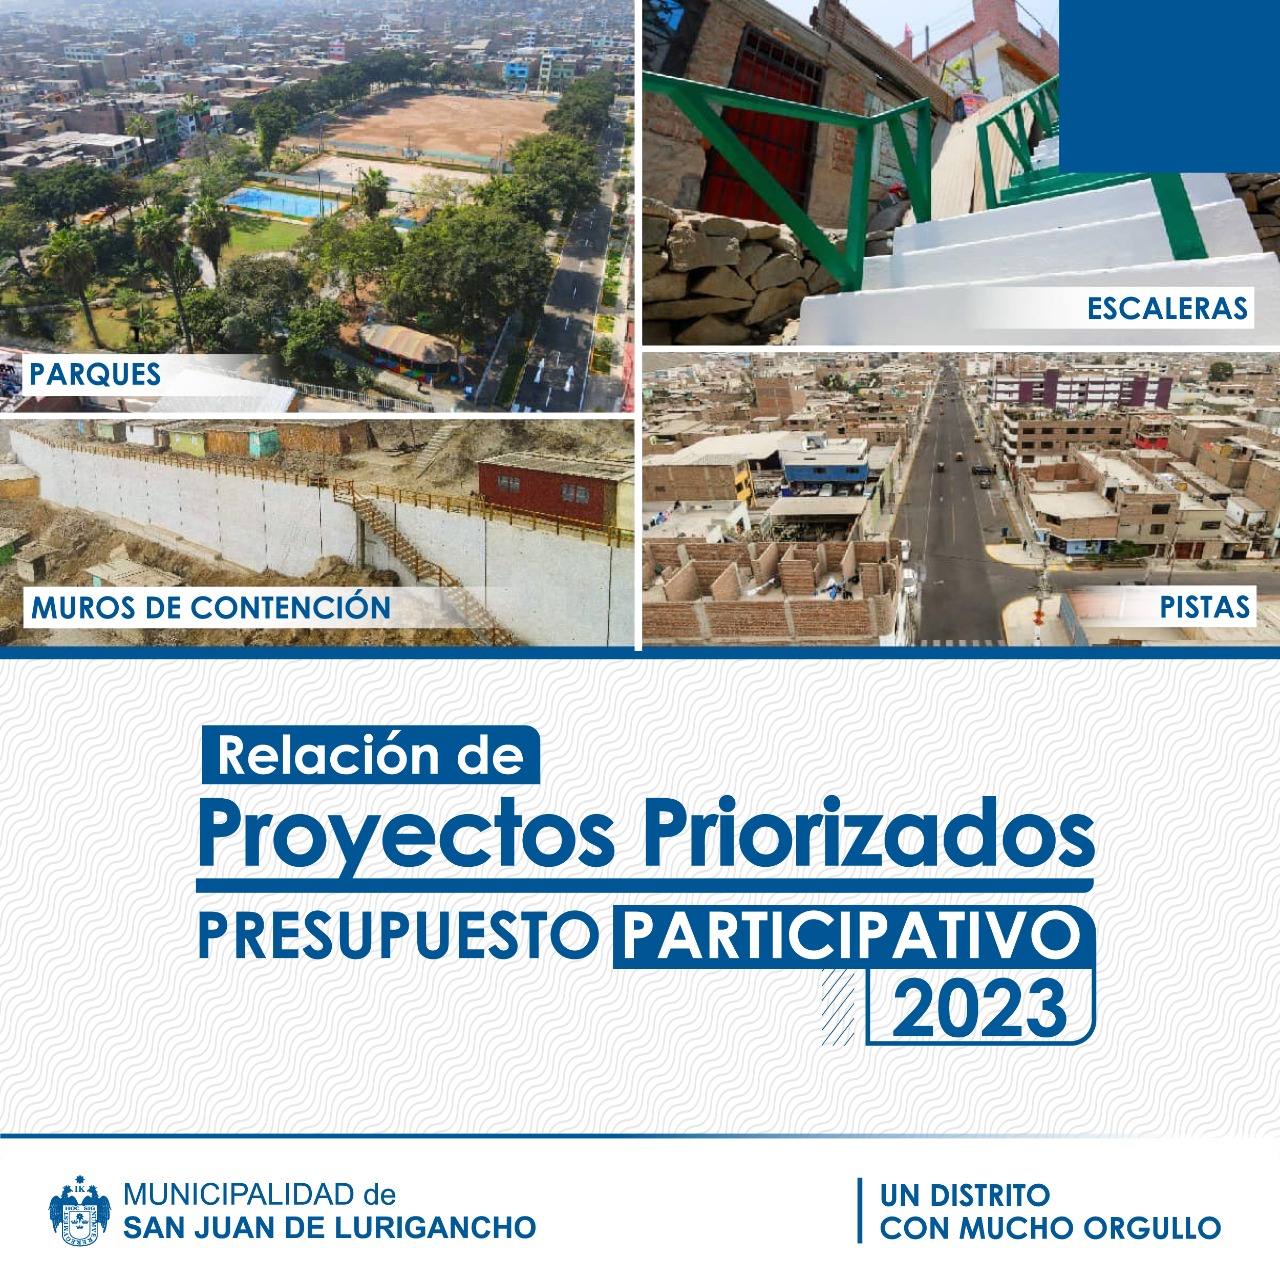 ANUNCIO DE PROYECTOS PRIORIZADOS 2023.jpeg